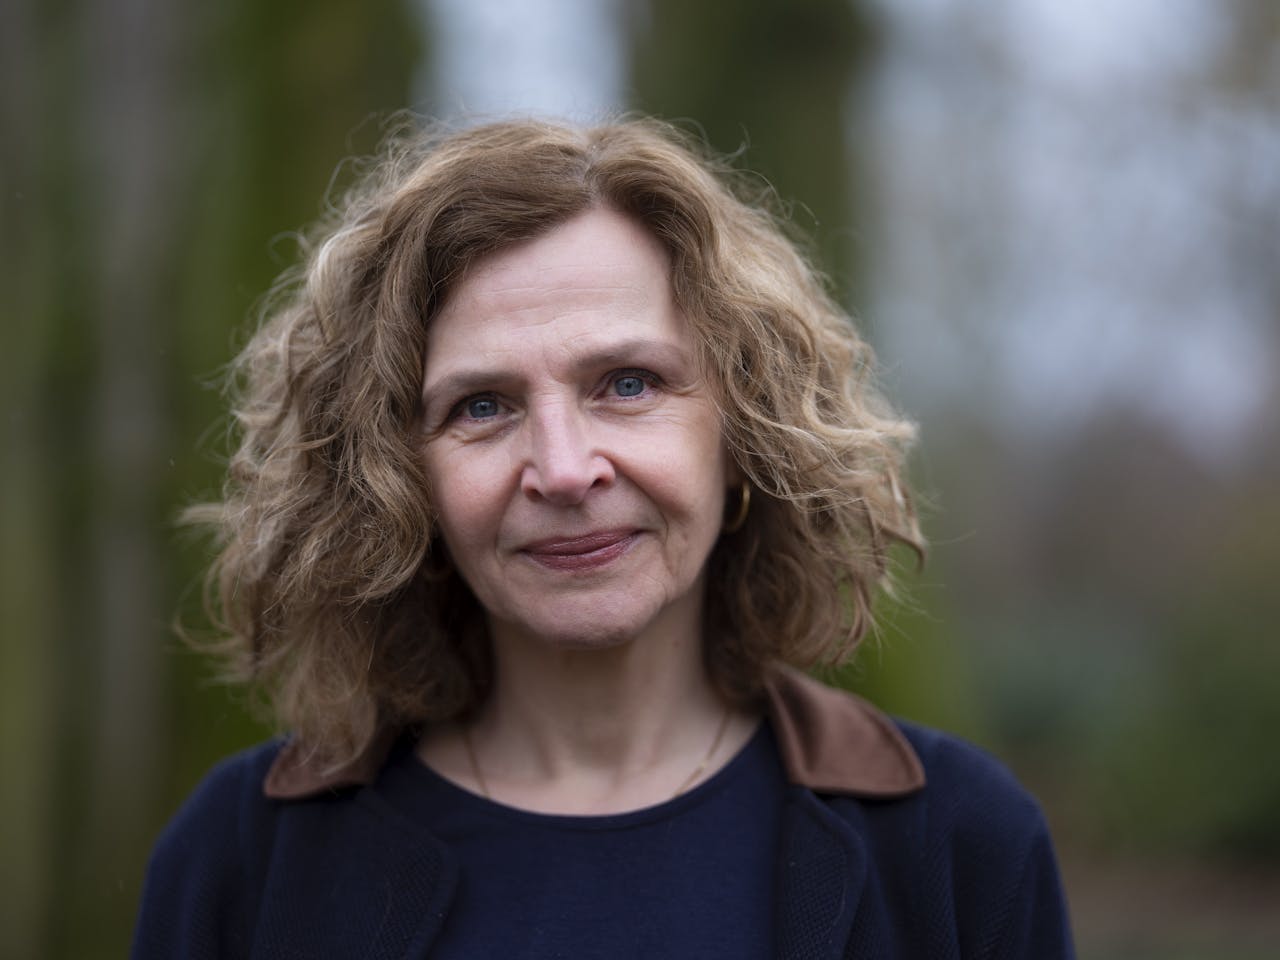 Edith Schippers keert na vijf jaar terug in de politiek. De voormalig minister van Volksgezondheid is de beoogd fractievoorzitter voor de VVD in de Eerste Kamer.